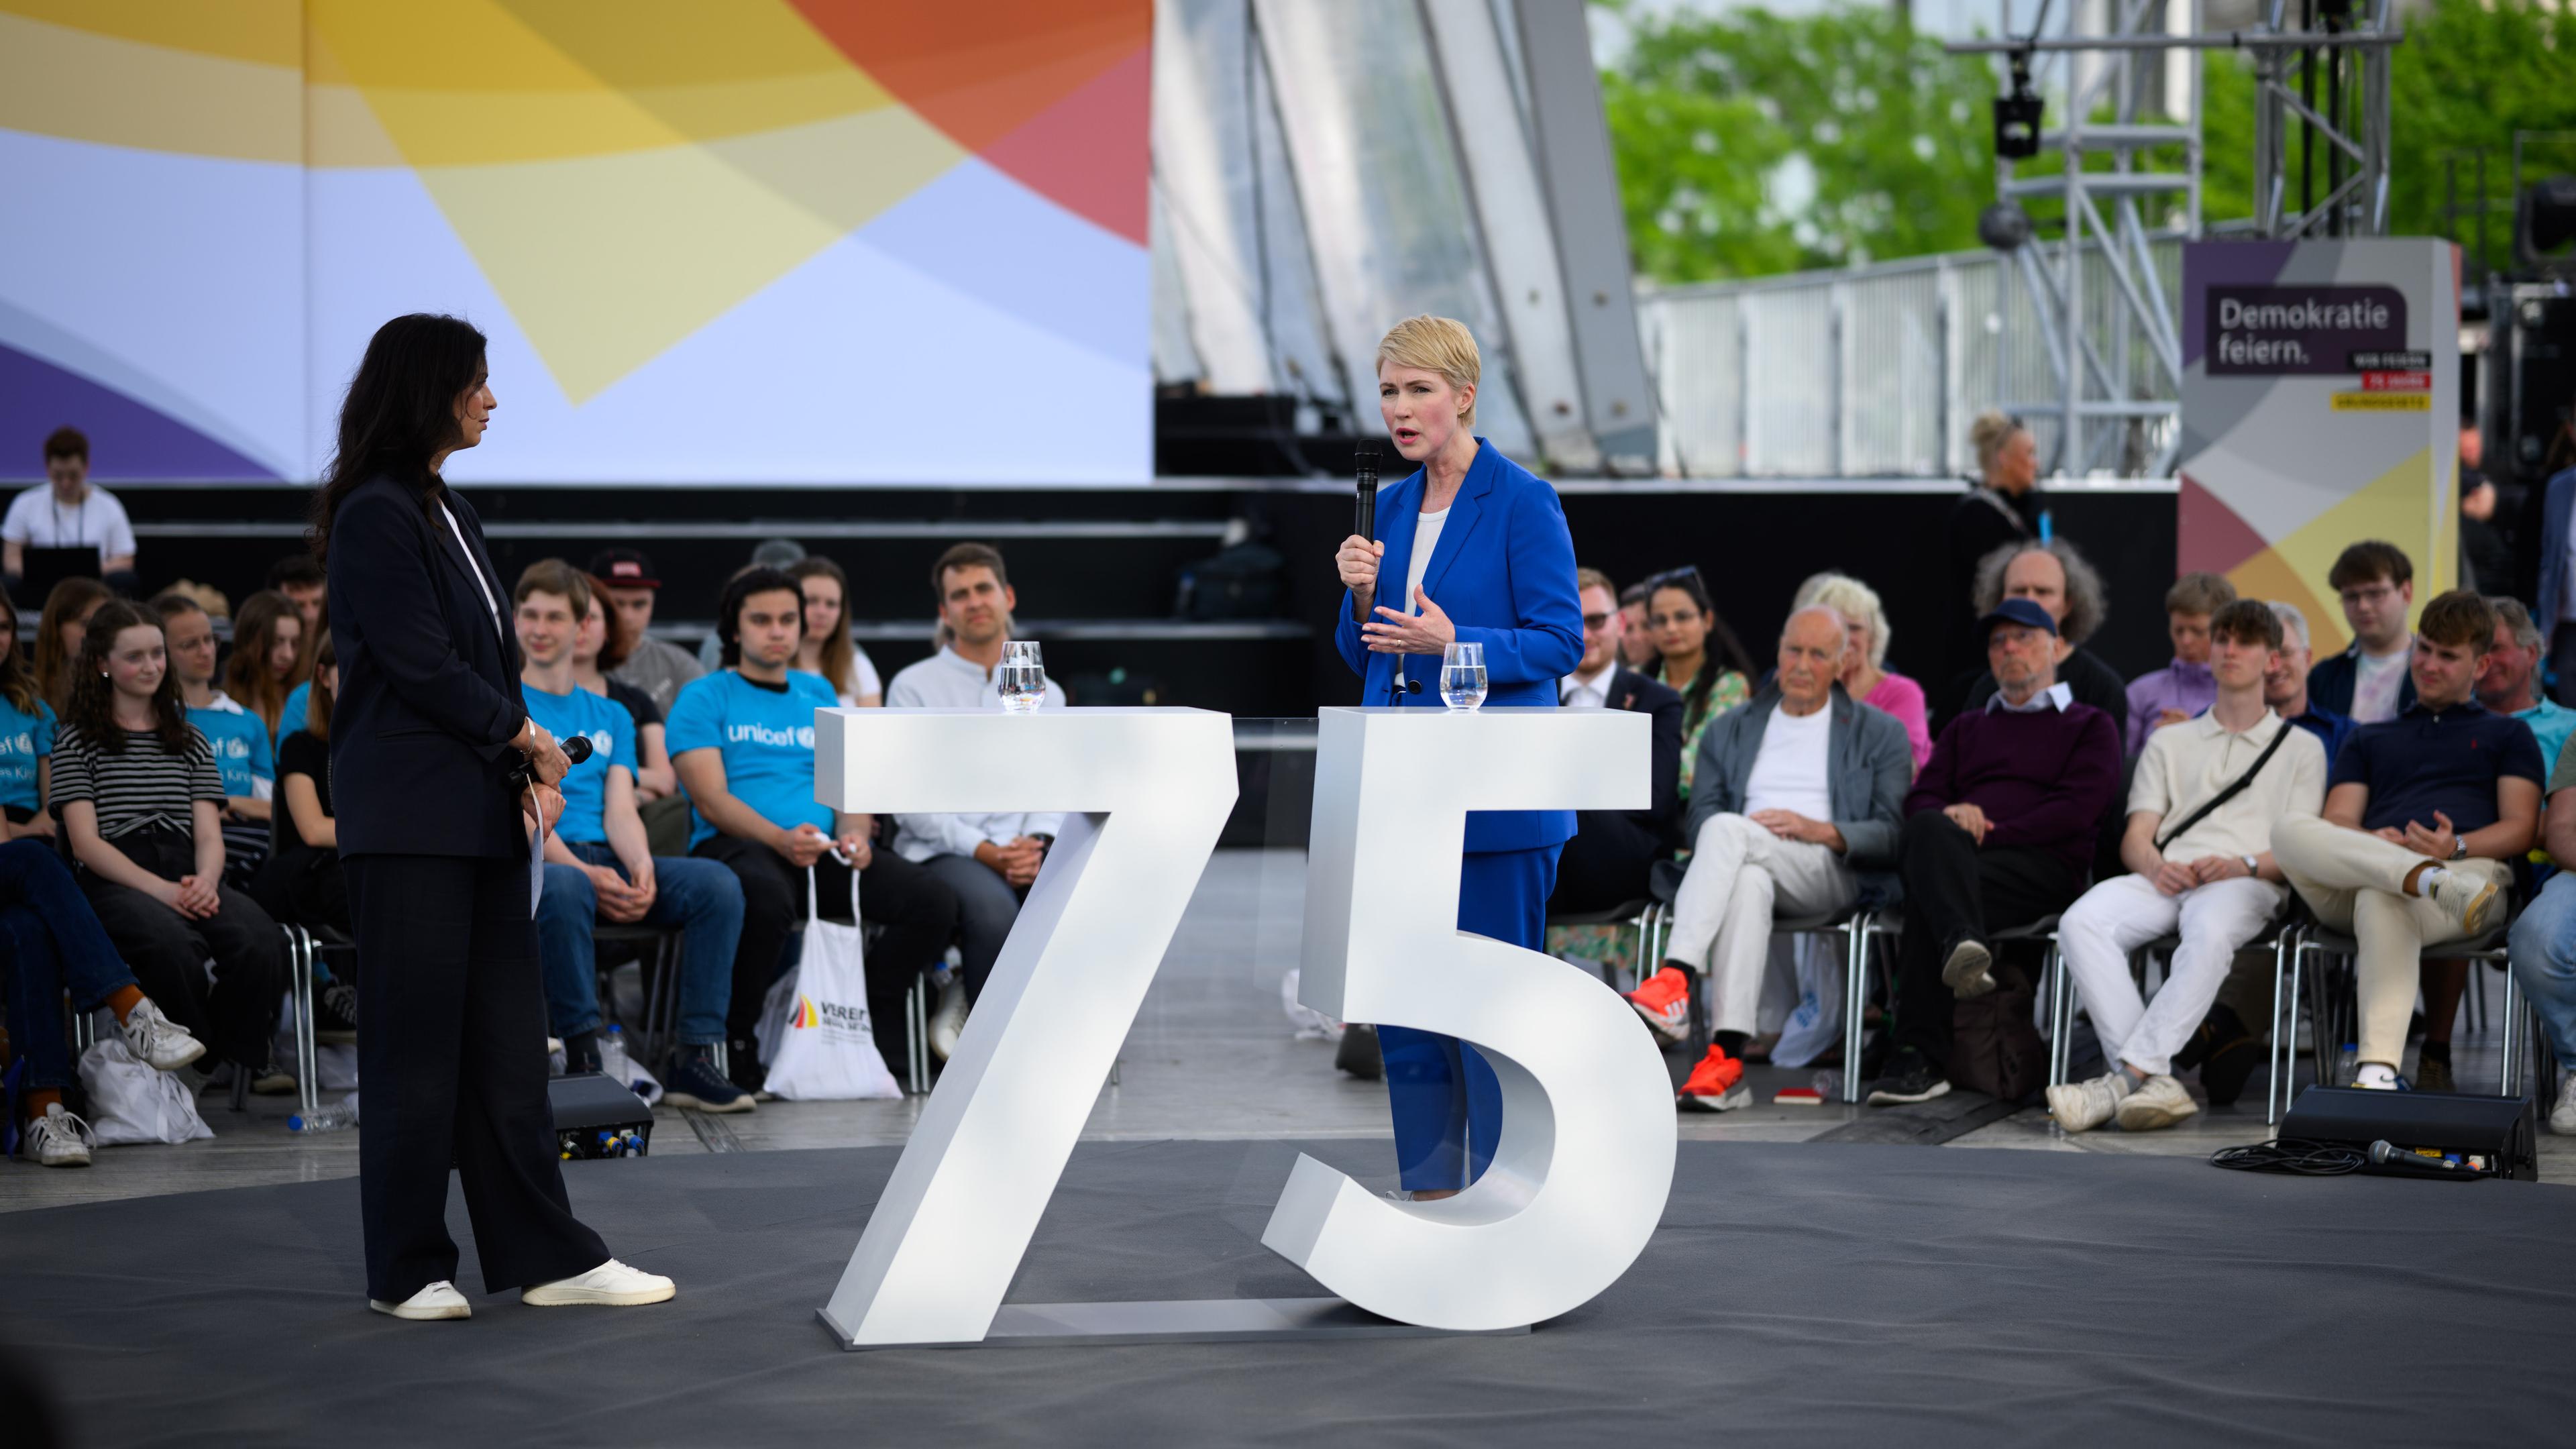 Manuela Schwesig (r, SPD), Ministerpräsidentin von Mecklenburg-Vorpommern und amtierende Bundesratspräsidentin, spricht am Dialogforum beim Demokratiefest im Berliner Regierungsviertel mit Besucherinnen und Besuchern.